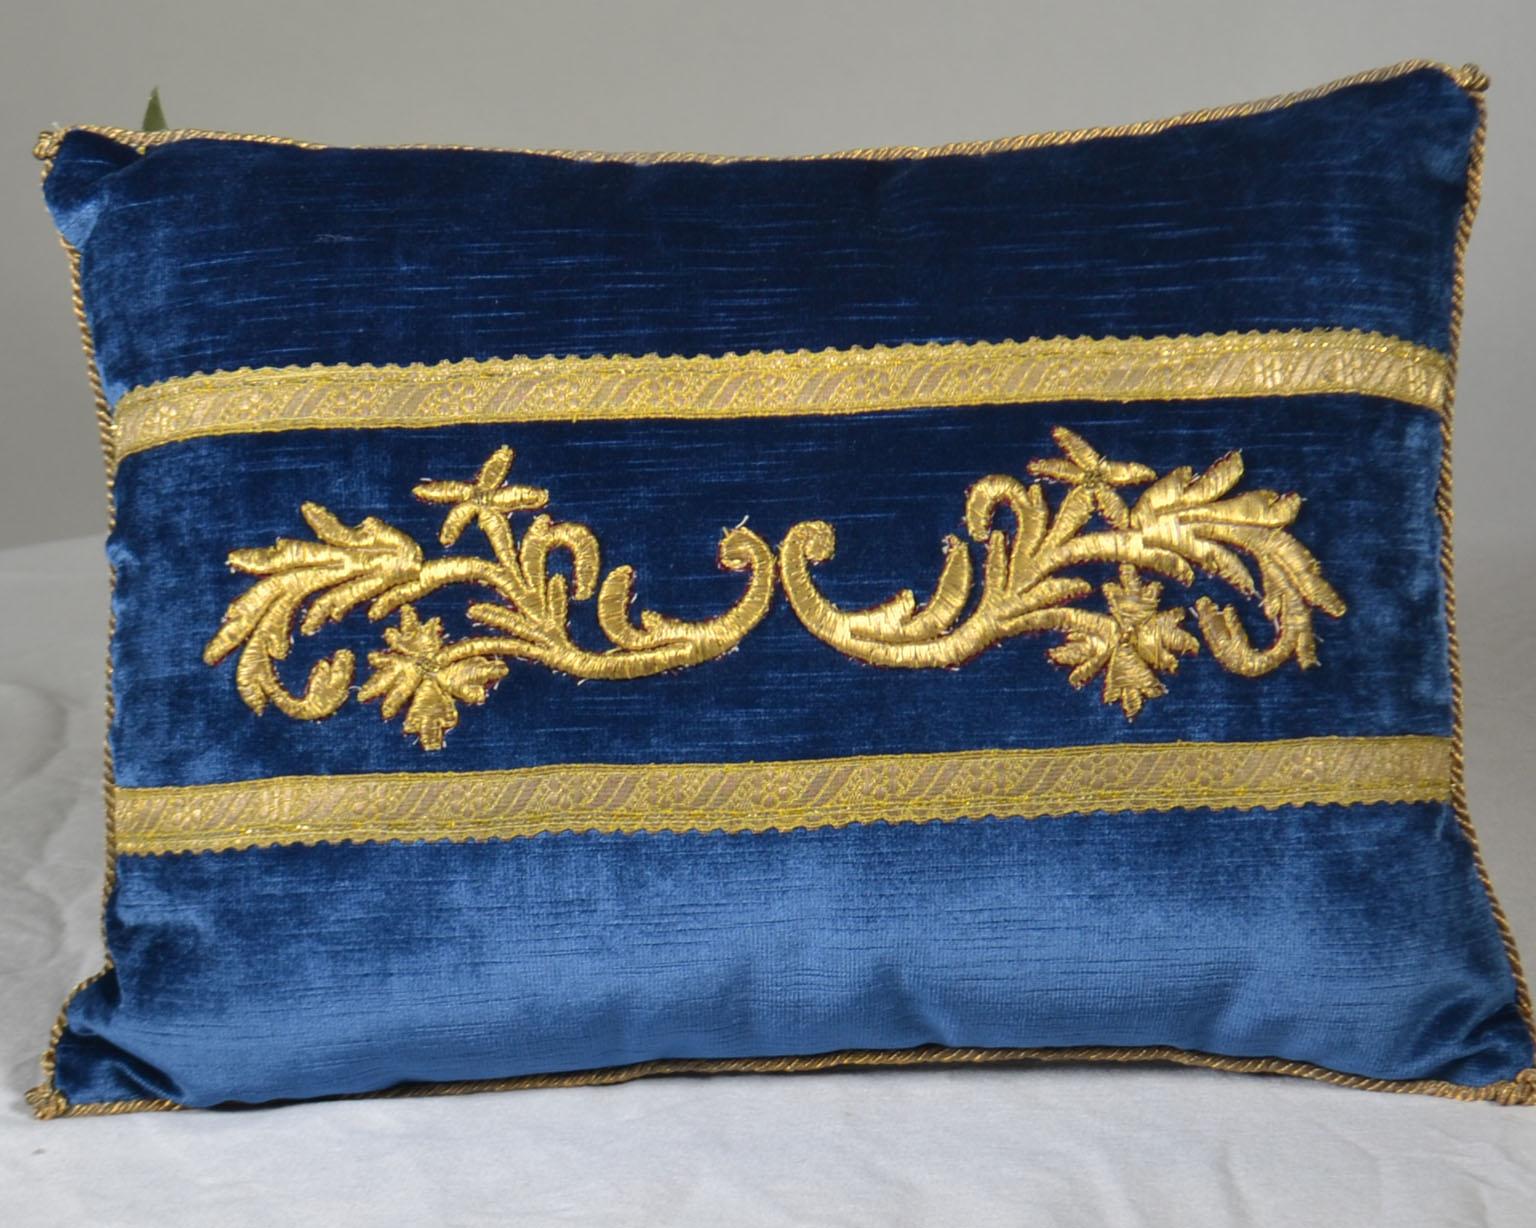 Broderie ancienne de l'Empire ottoman en relief, bordée de métal doré, sur velours bleu nuit. Garni à la main d'un cordon métallique or vintage noué dans les coins. Garni de duvet. Taille : 11